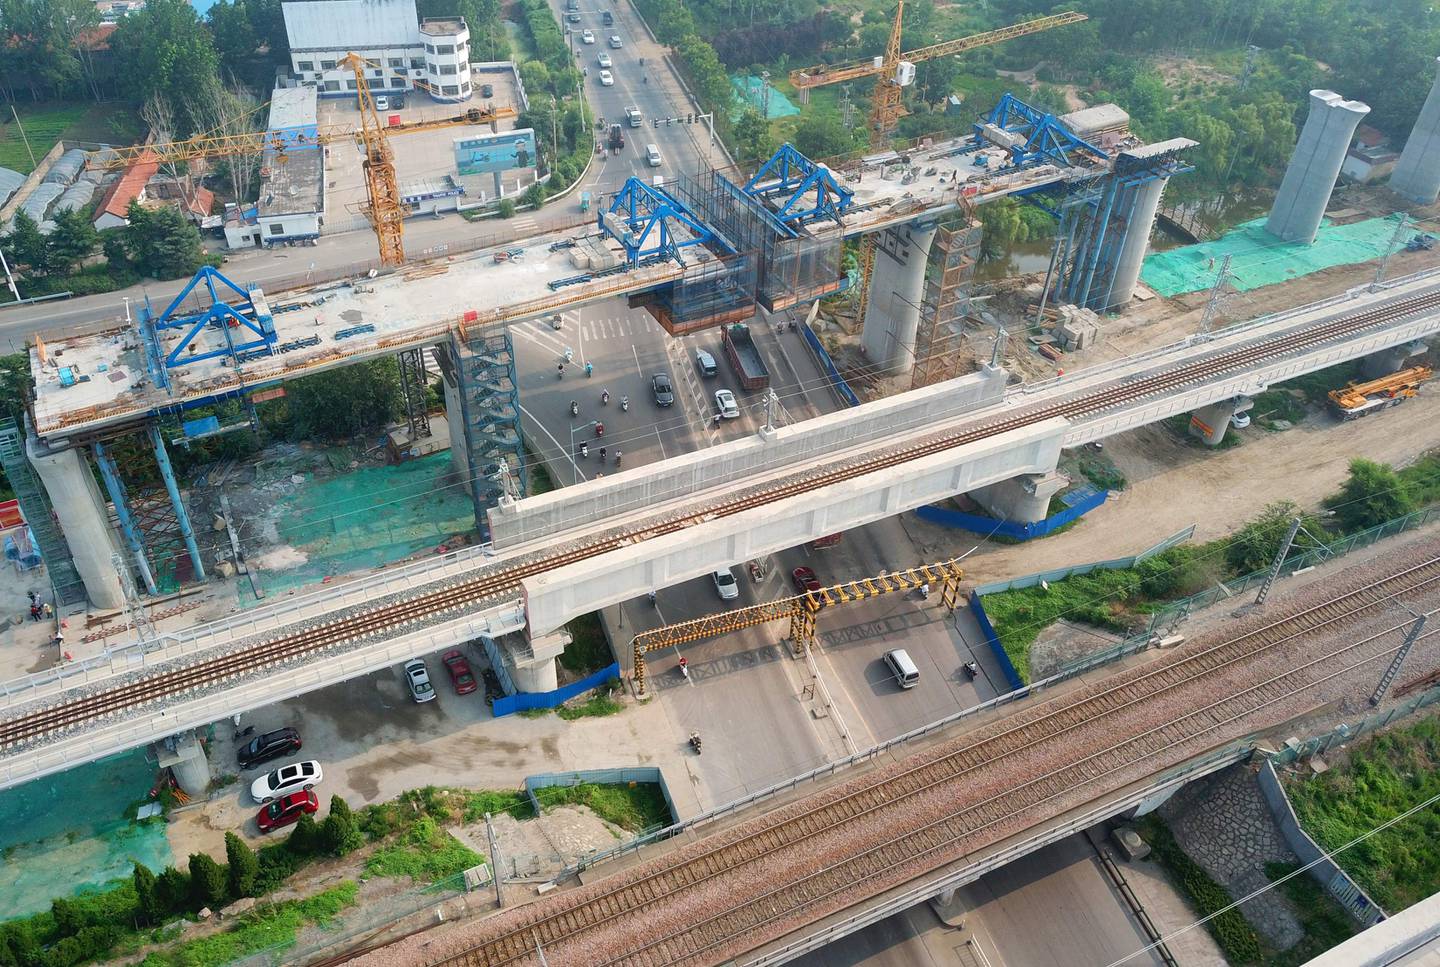 Kina leder an i byggingen av nye høyhastighetsbaner. Bildet viser arbeid på en ny høyhastighetsbane i Donghai i Jiangsu-provinsen øst i Kina.